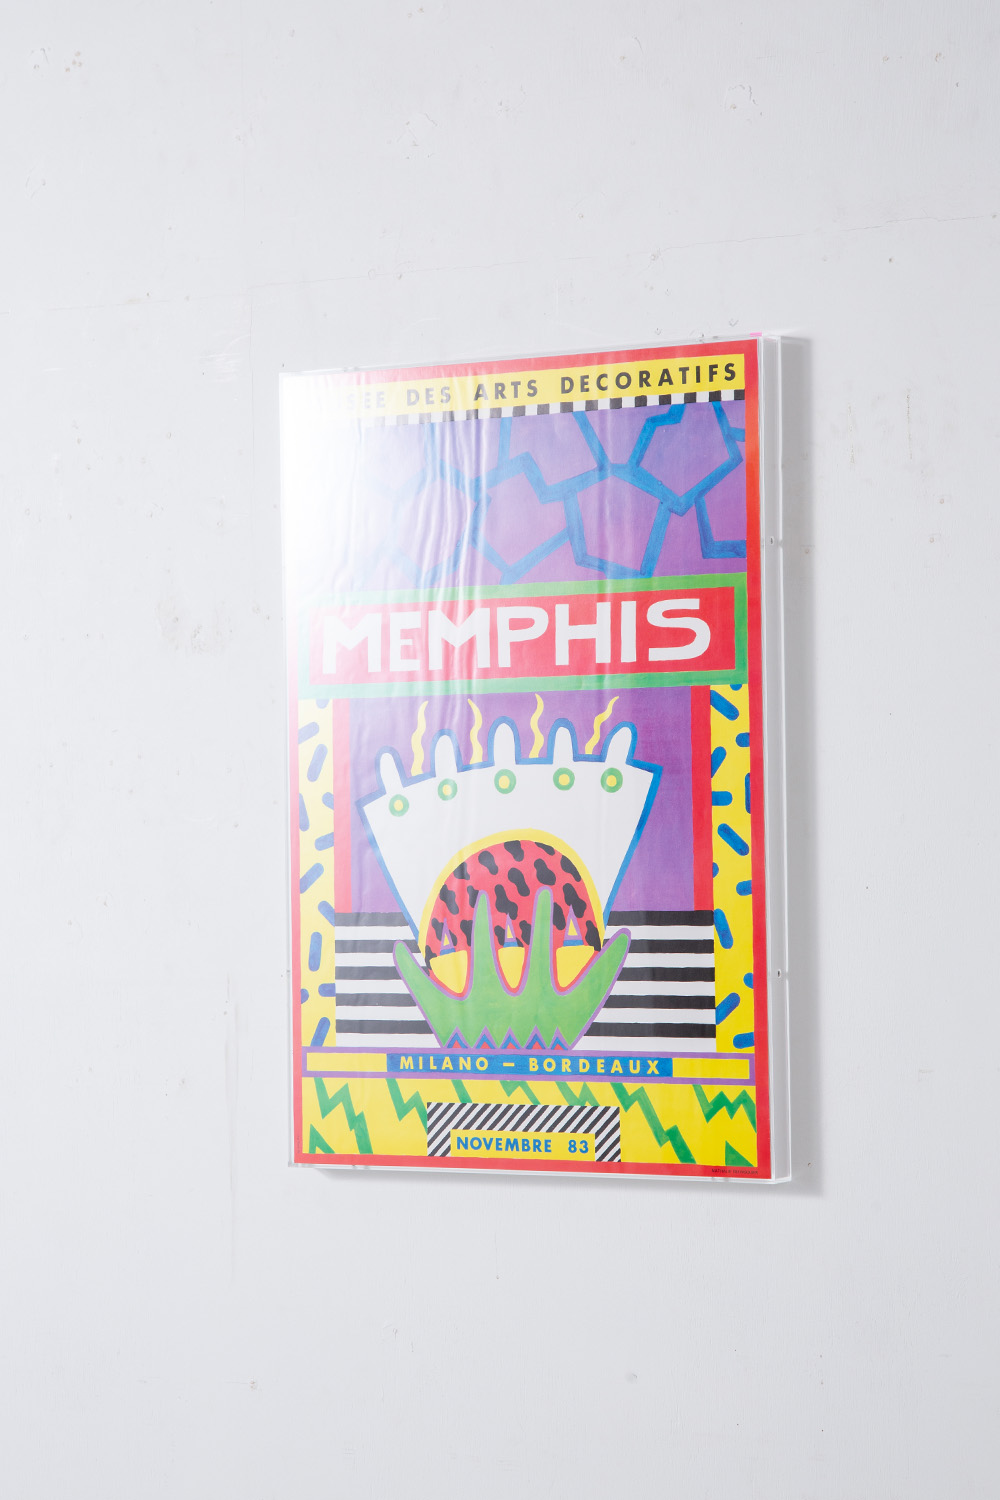 ‘Untitled’ by Memphis = Nathalie du Pasquier for Musée des Arts décoratifs , 1983